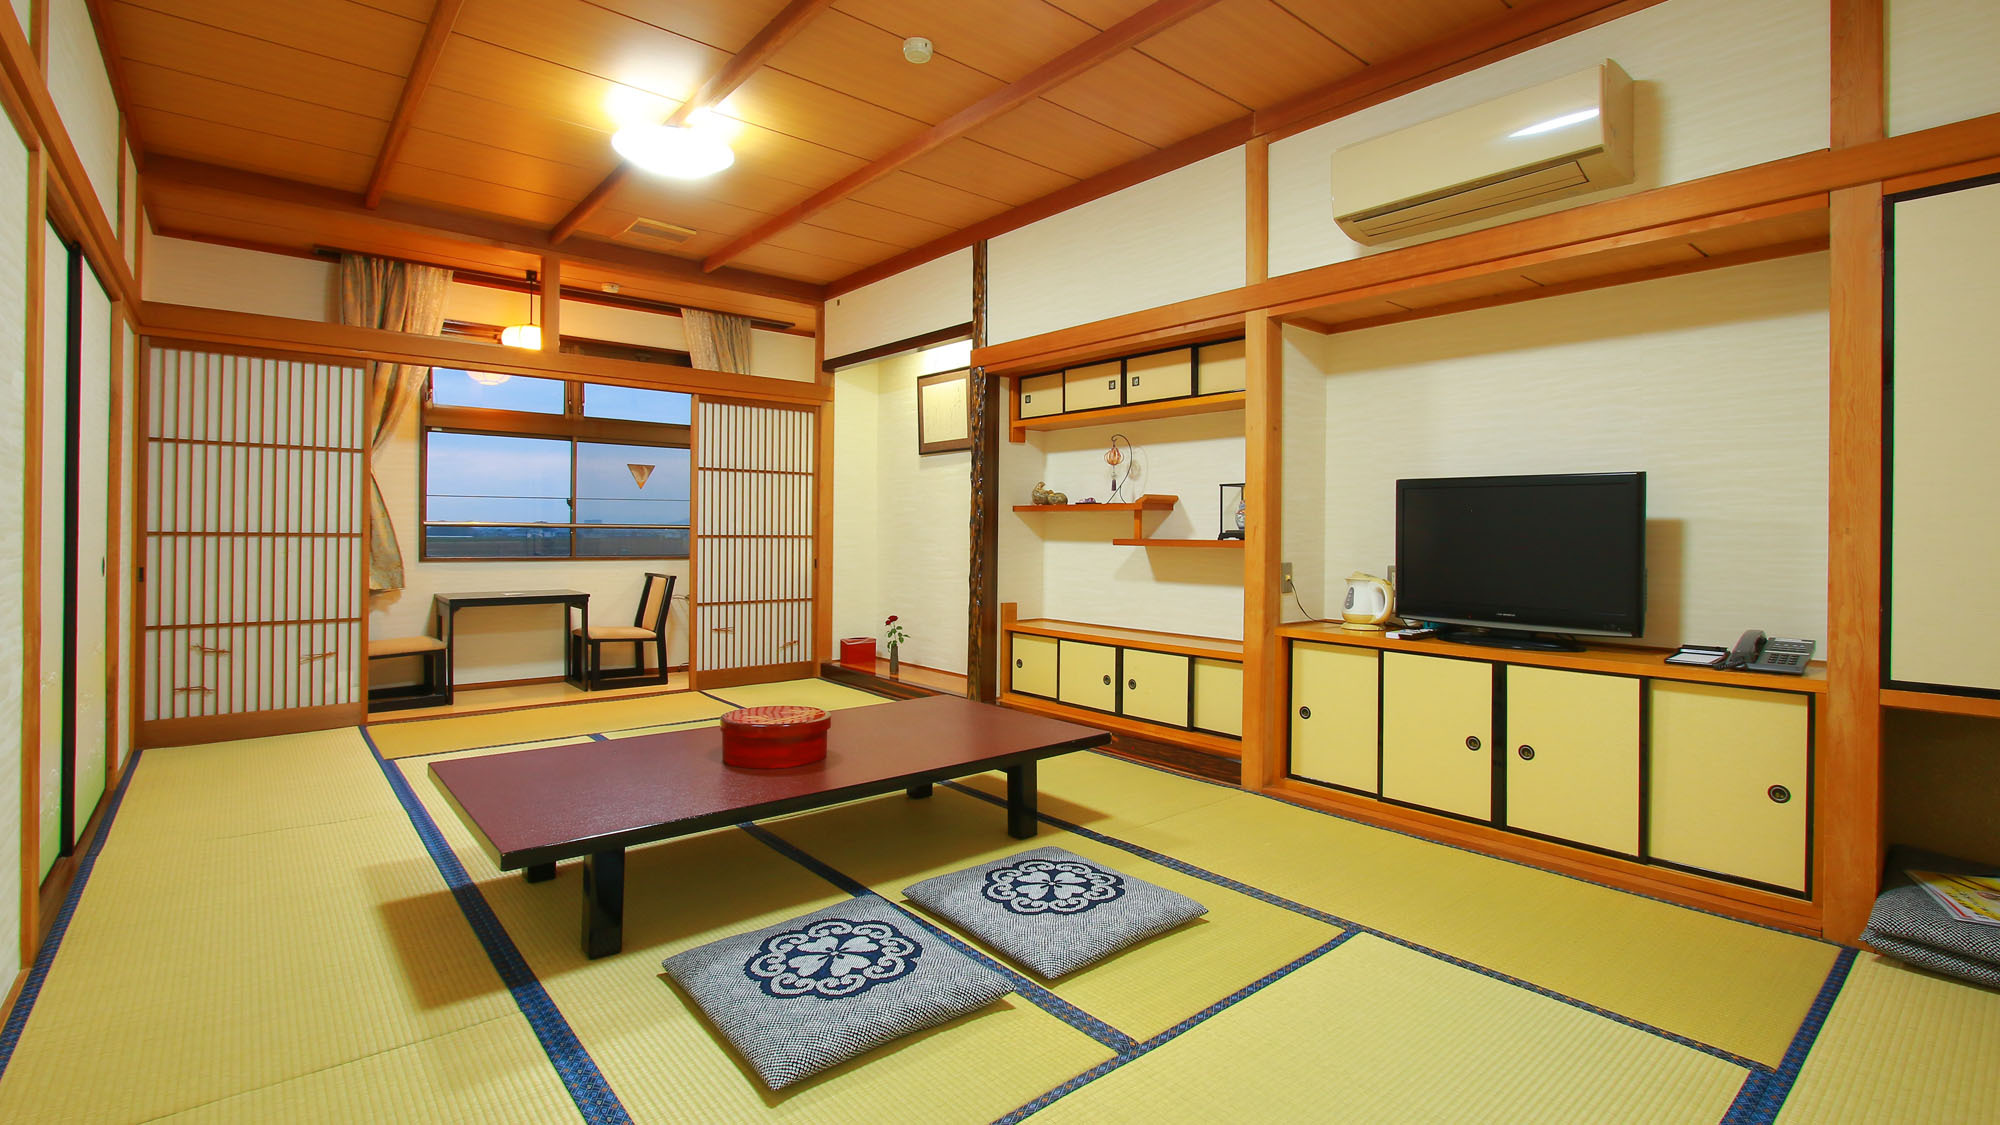 朝倉-和室14畳〜ゆったりとした和の空間